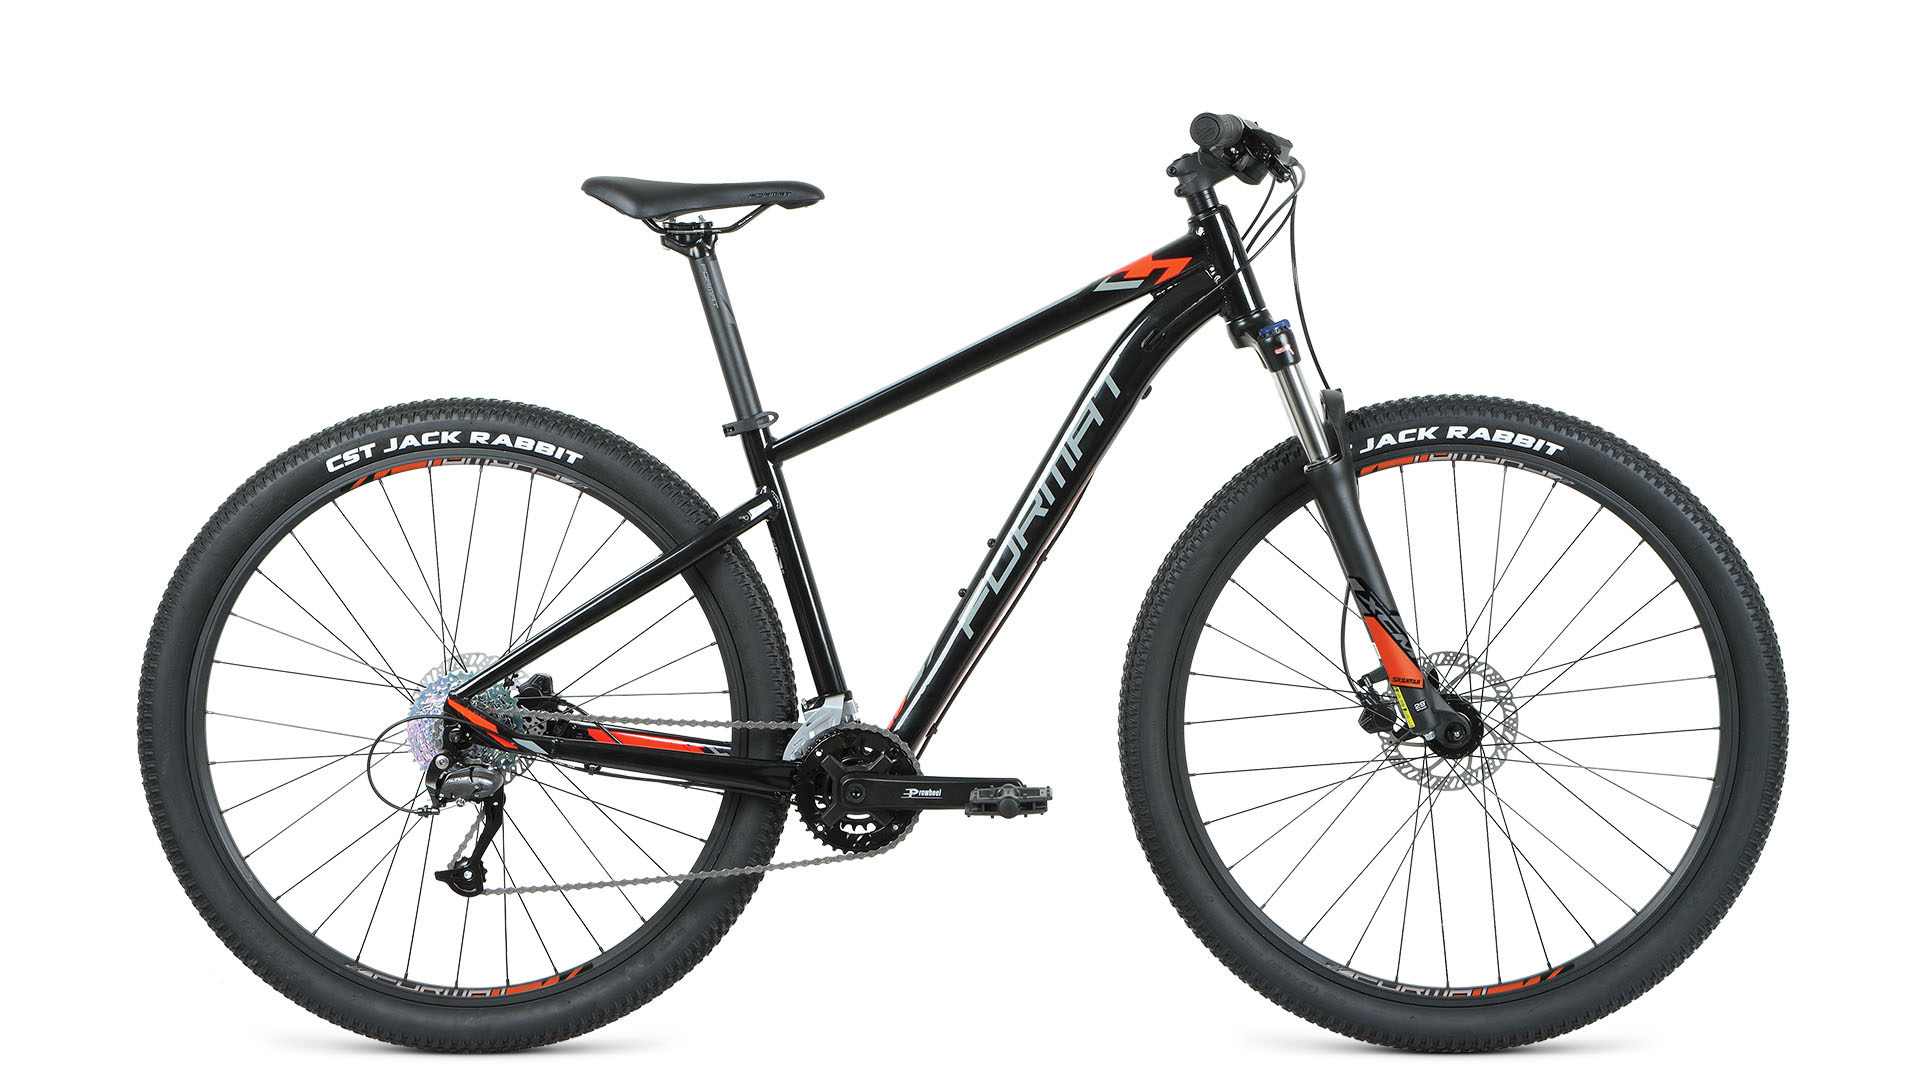 Велосипед FORMAT 1413 27.5 (2021) M / черный M ростовка